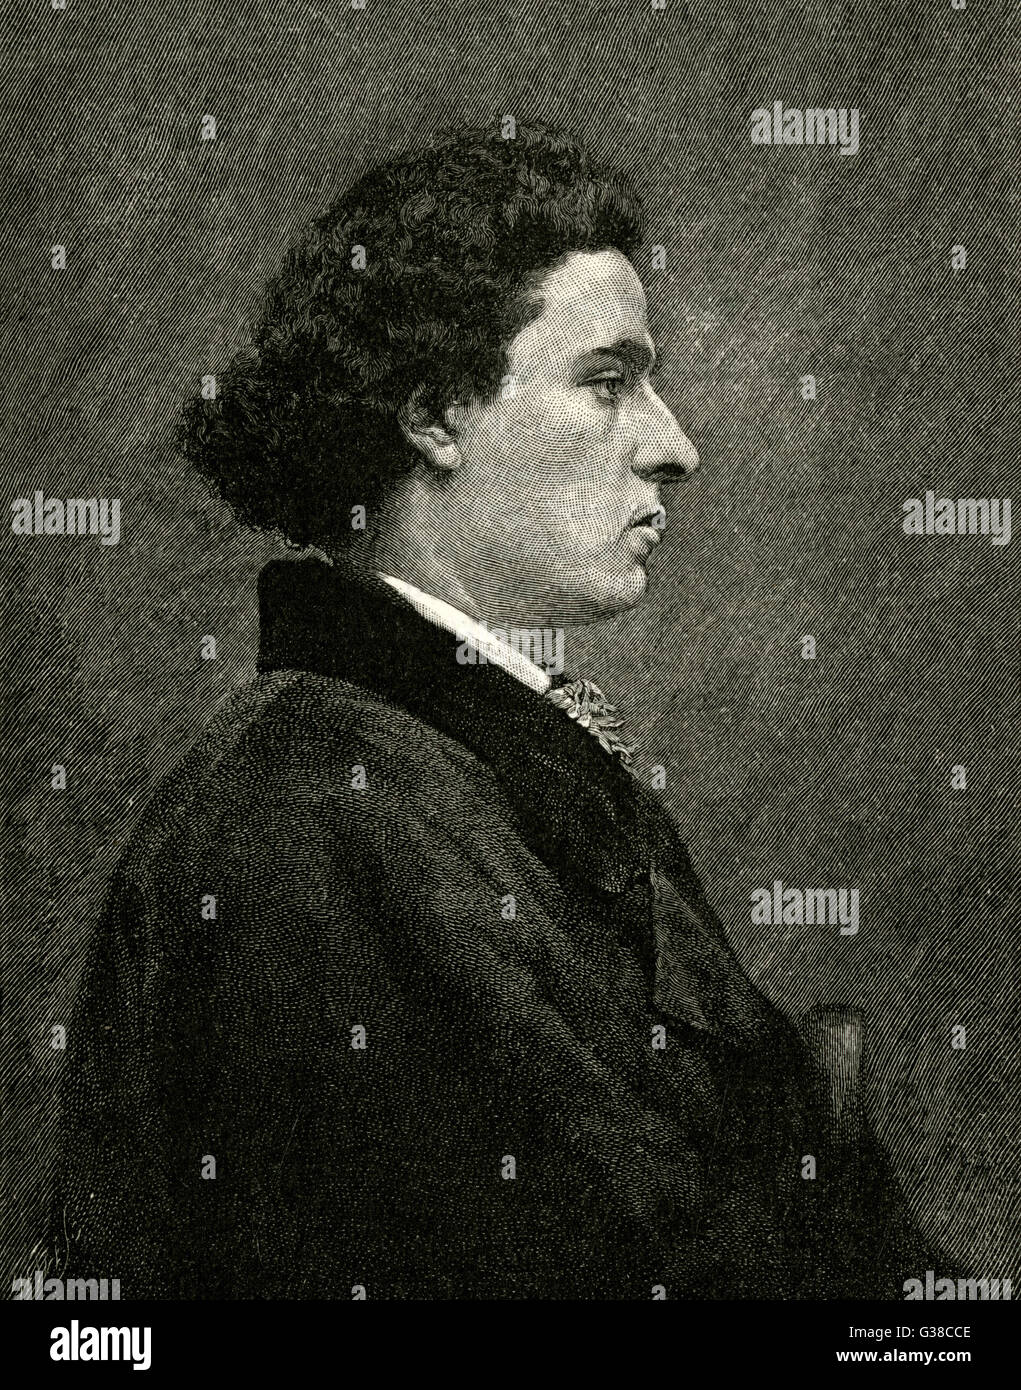 MARIANO FORTUNY Y CARBO Profilo del pittore spagnolo,noto per la storica e dipinti di genere. Data: 1838 - 1874 Foto Stock